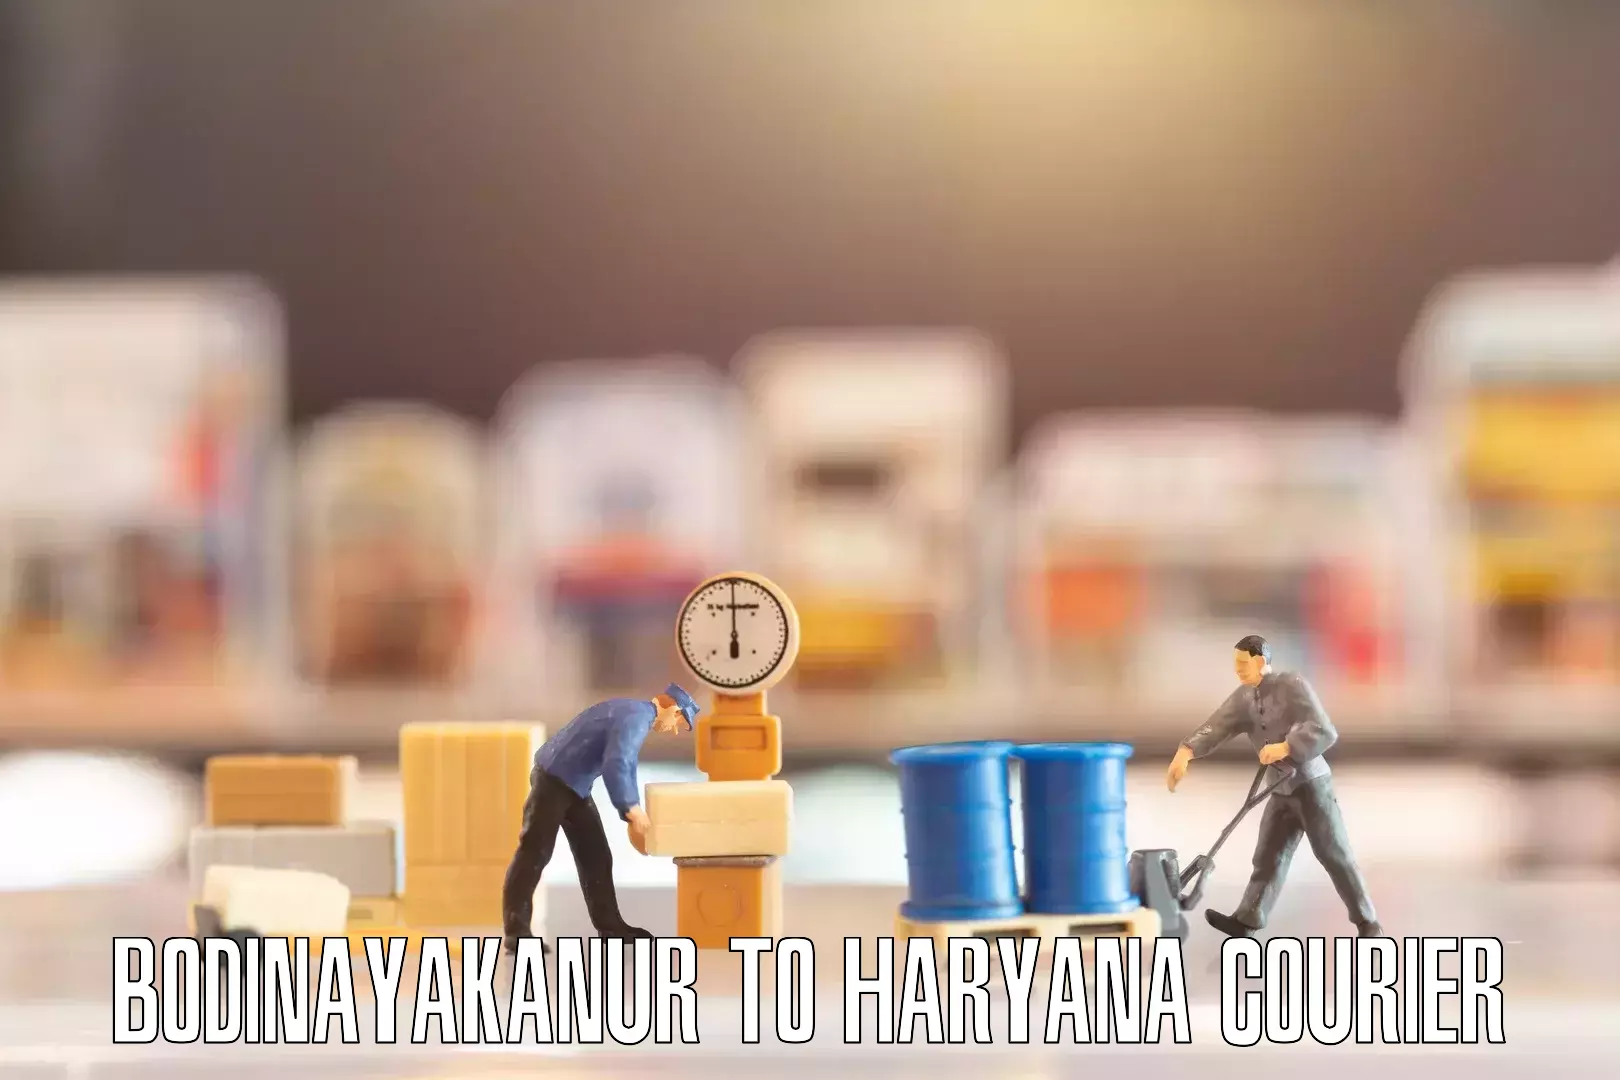 Professional furniture movers Bodinayakanur to Hansi